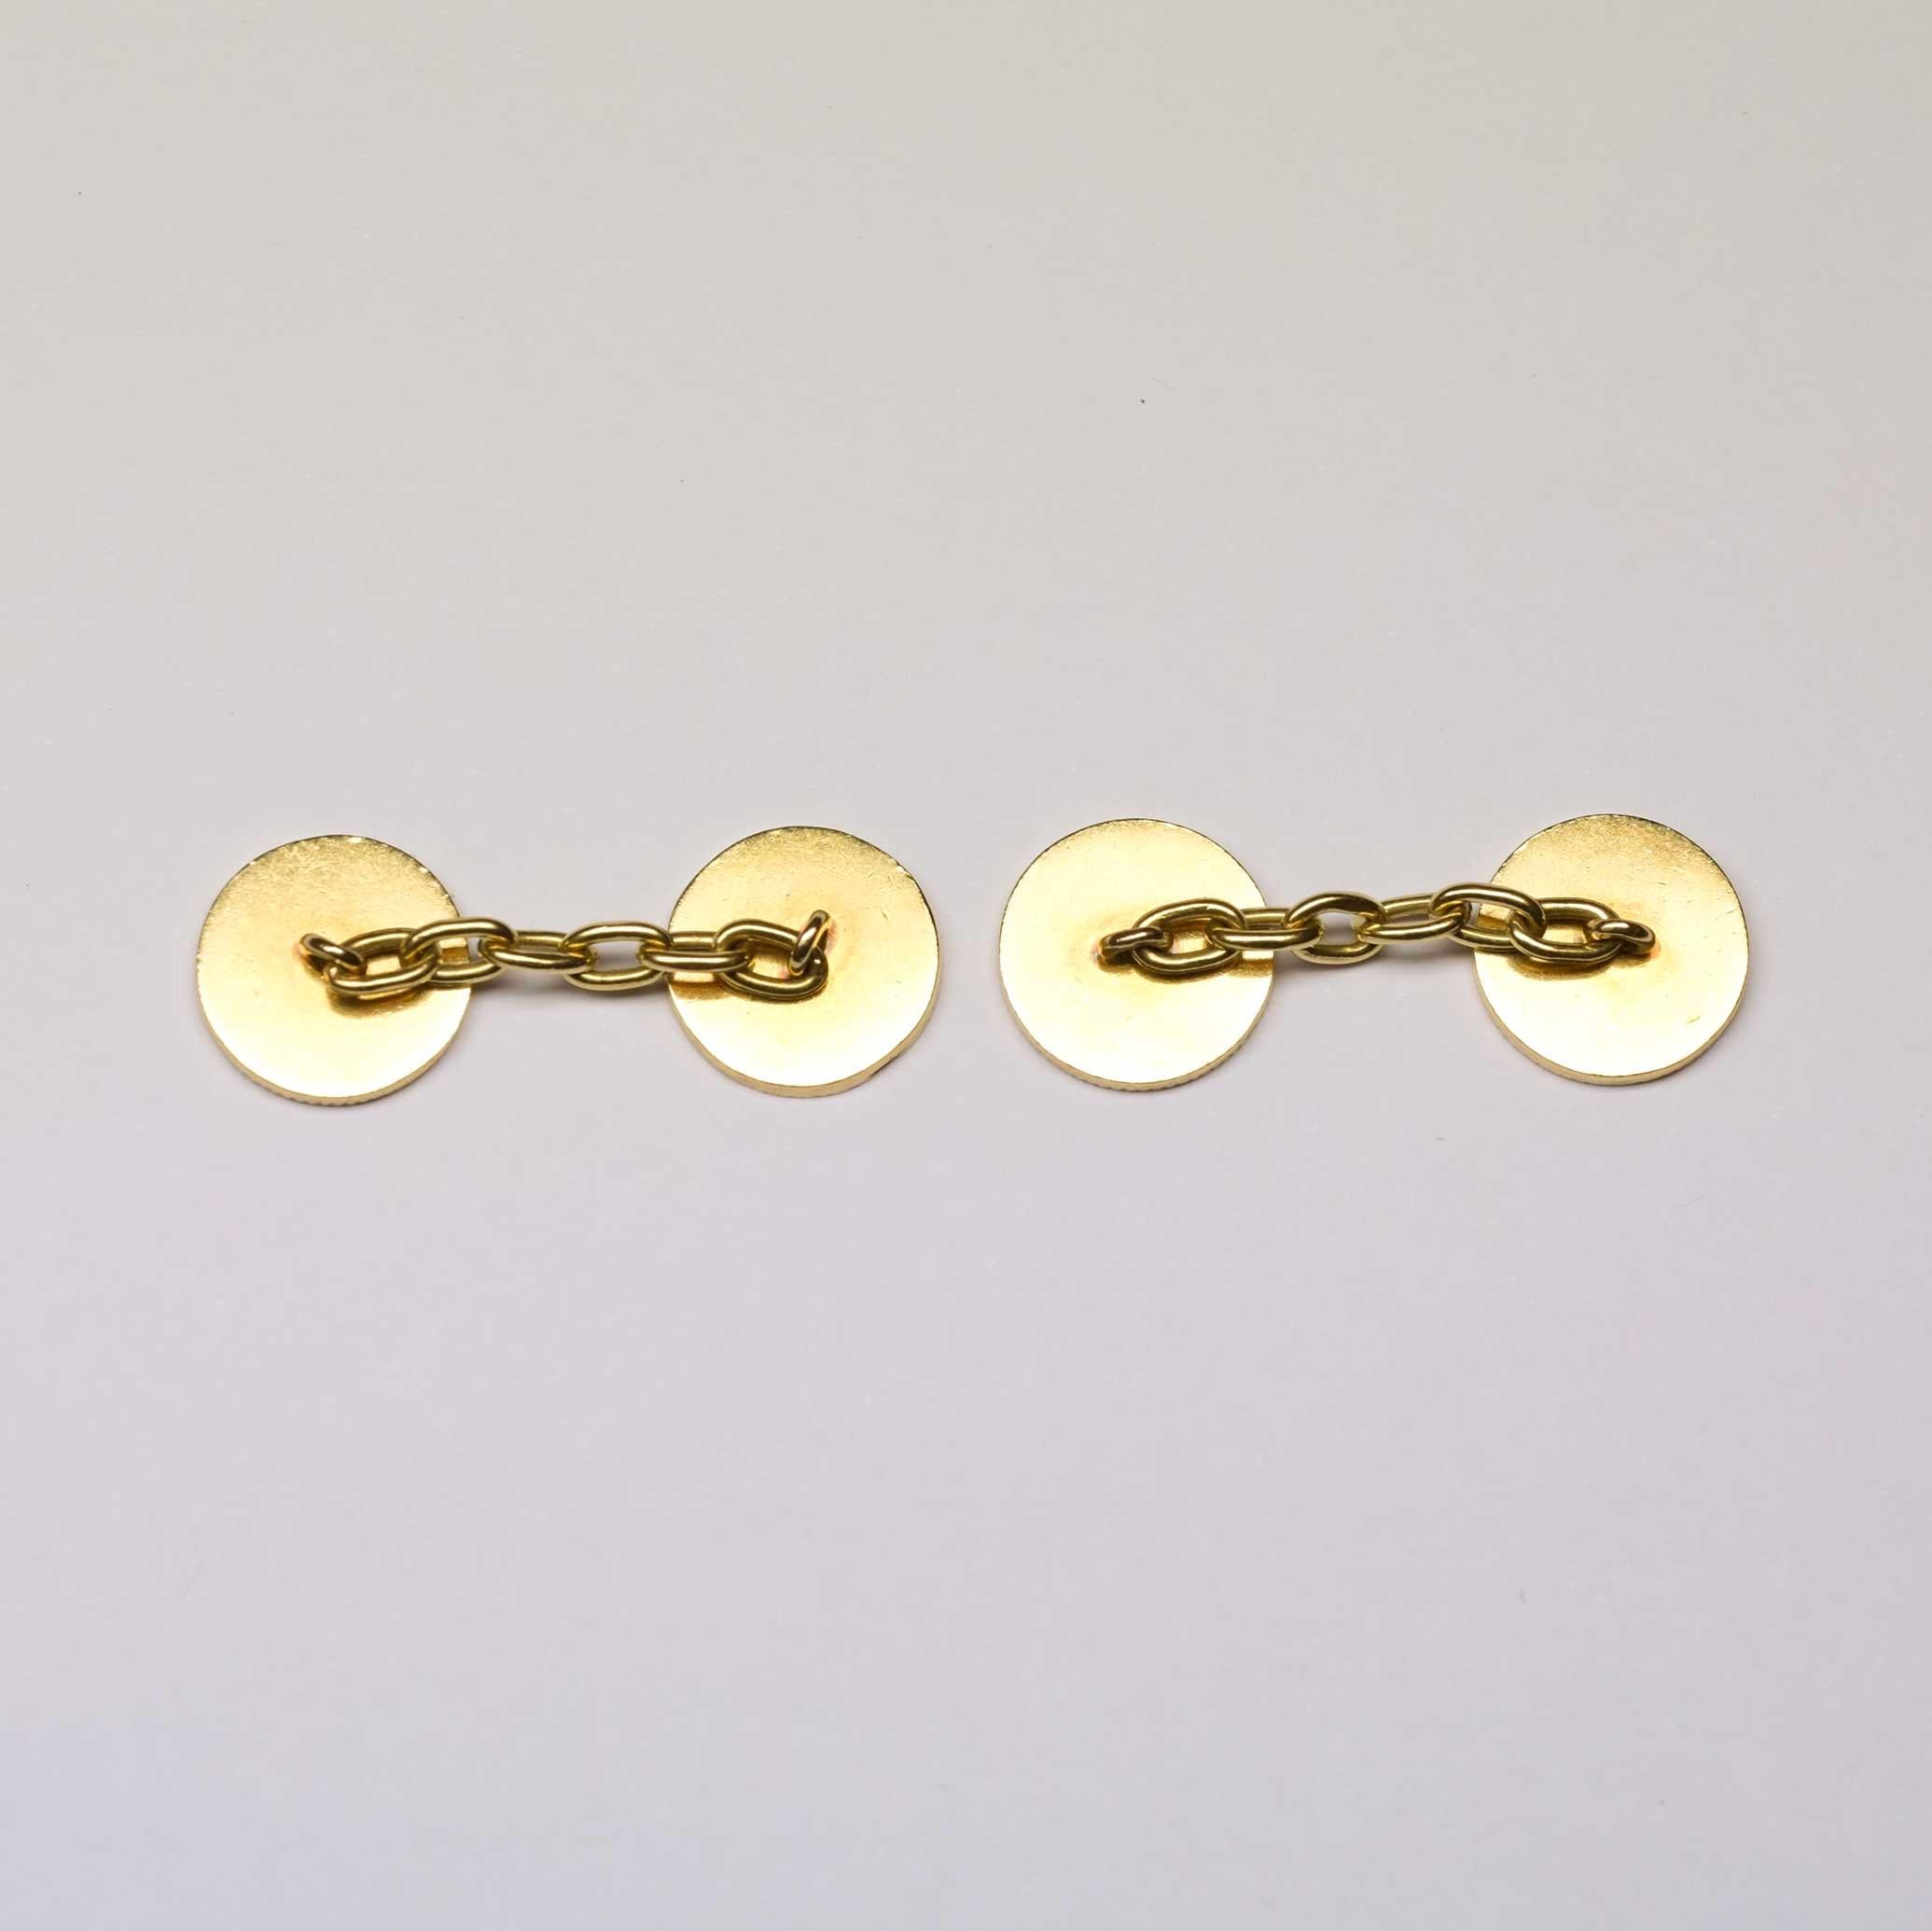 gold coin cufflinks